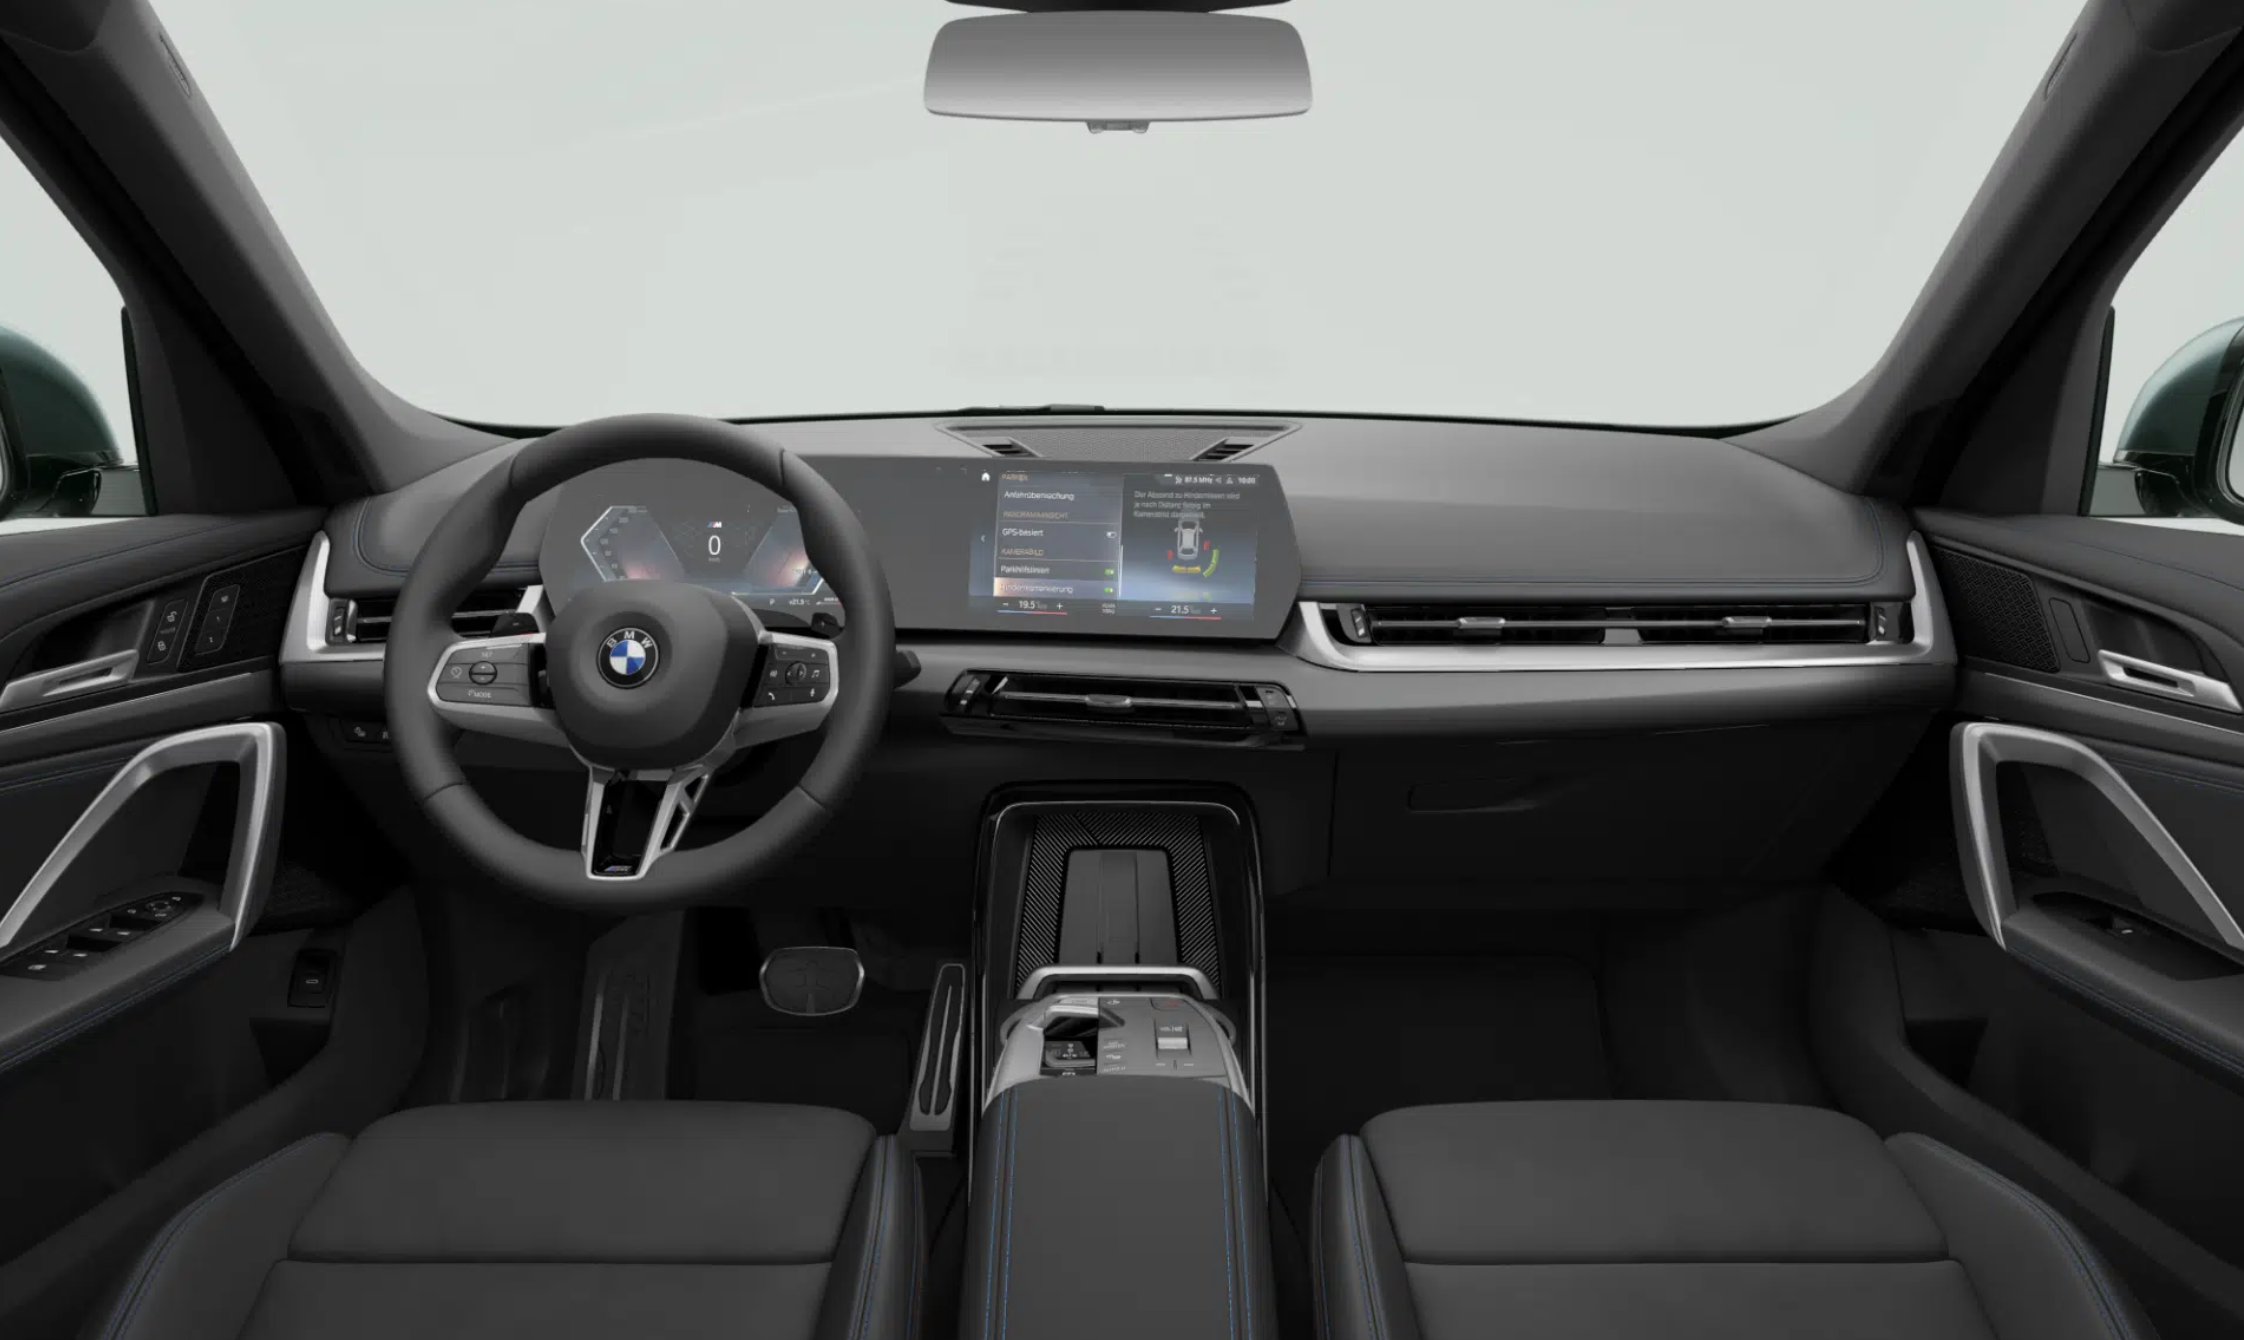 BMW X1 23d xDrive | nová generace | sportovně luxusní SUV | naftový motor 210 koní | maximální výbava | nový model 2023 | auto ve výrobě | objednání online | auto eshop AUTOiBUY.com